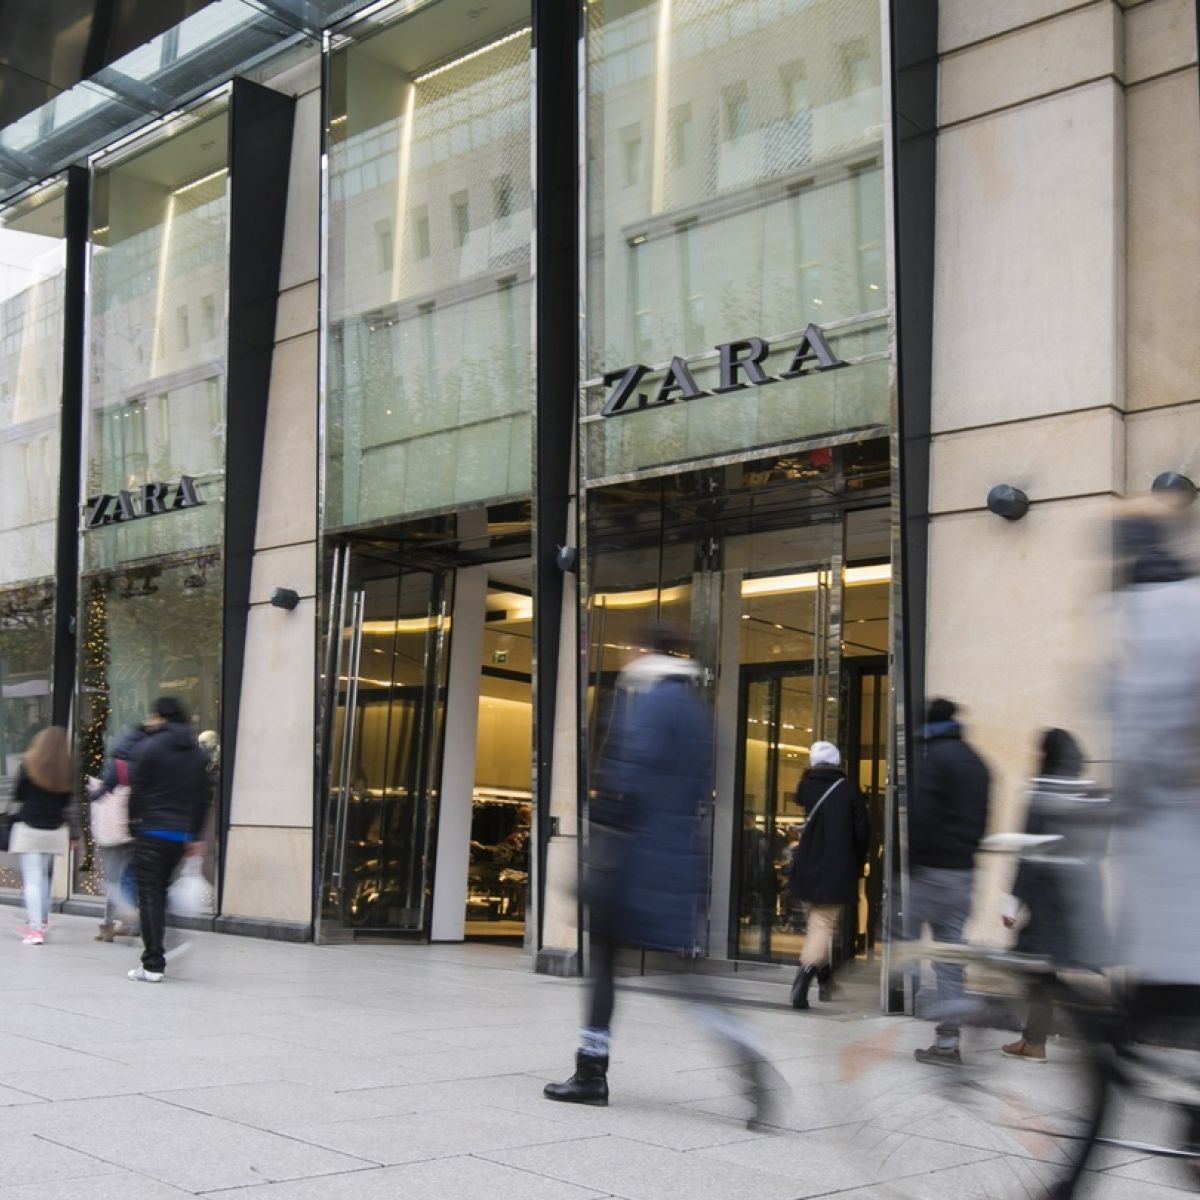 Zara online move may impact on Dublin 